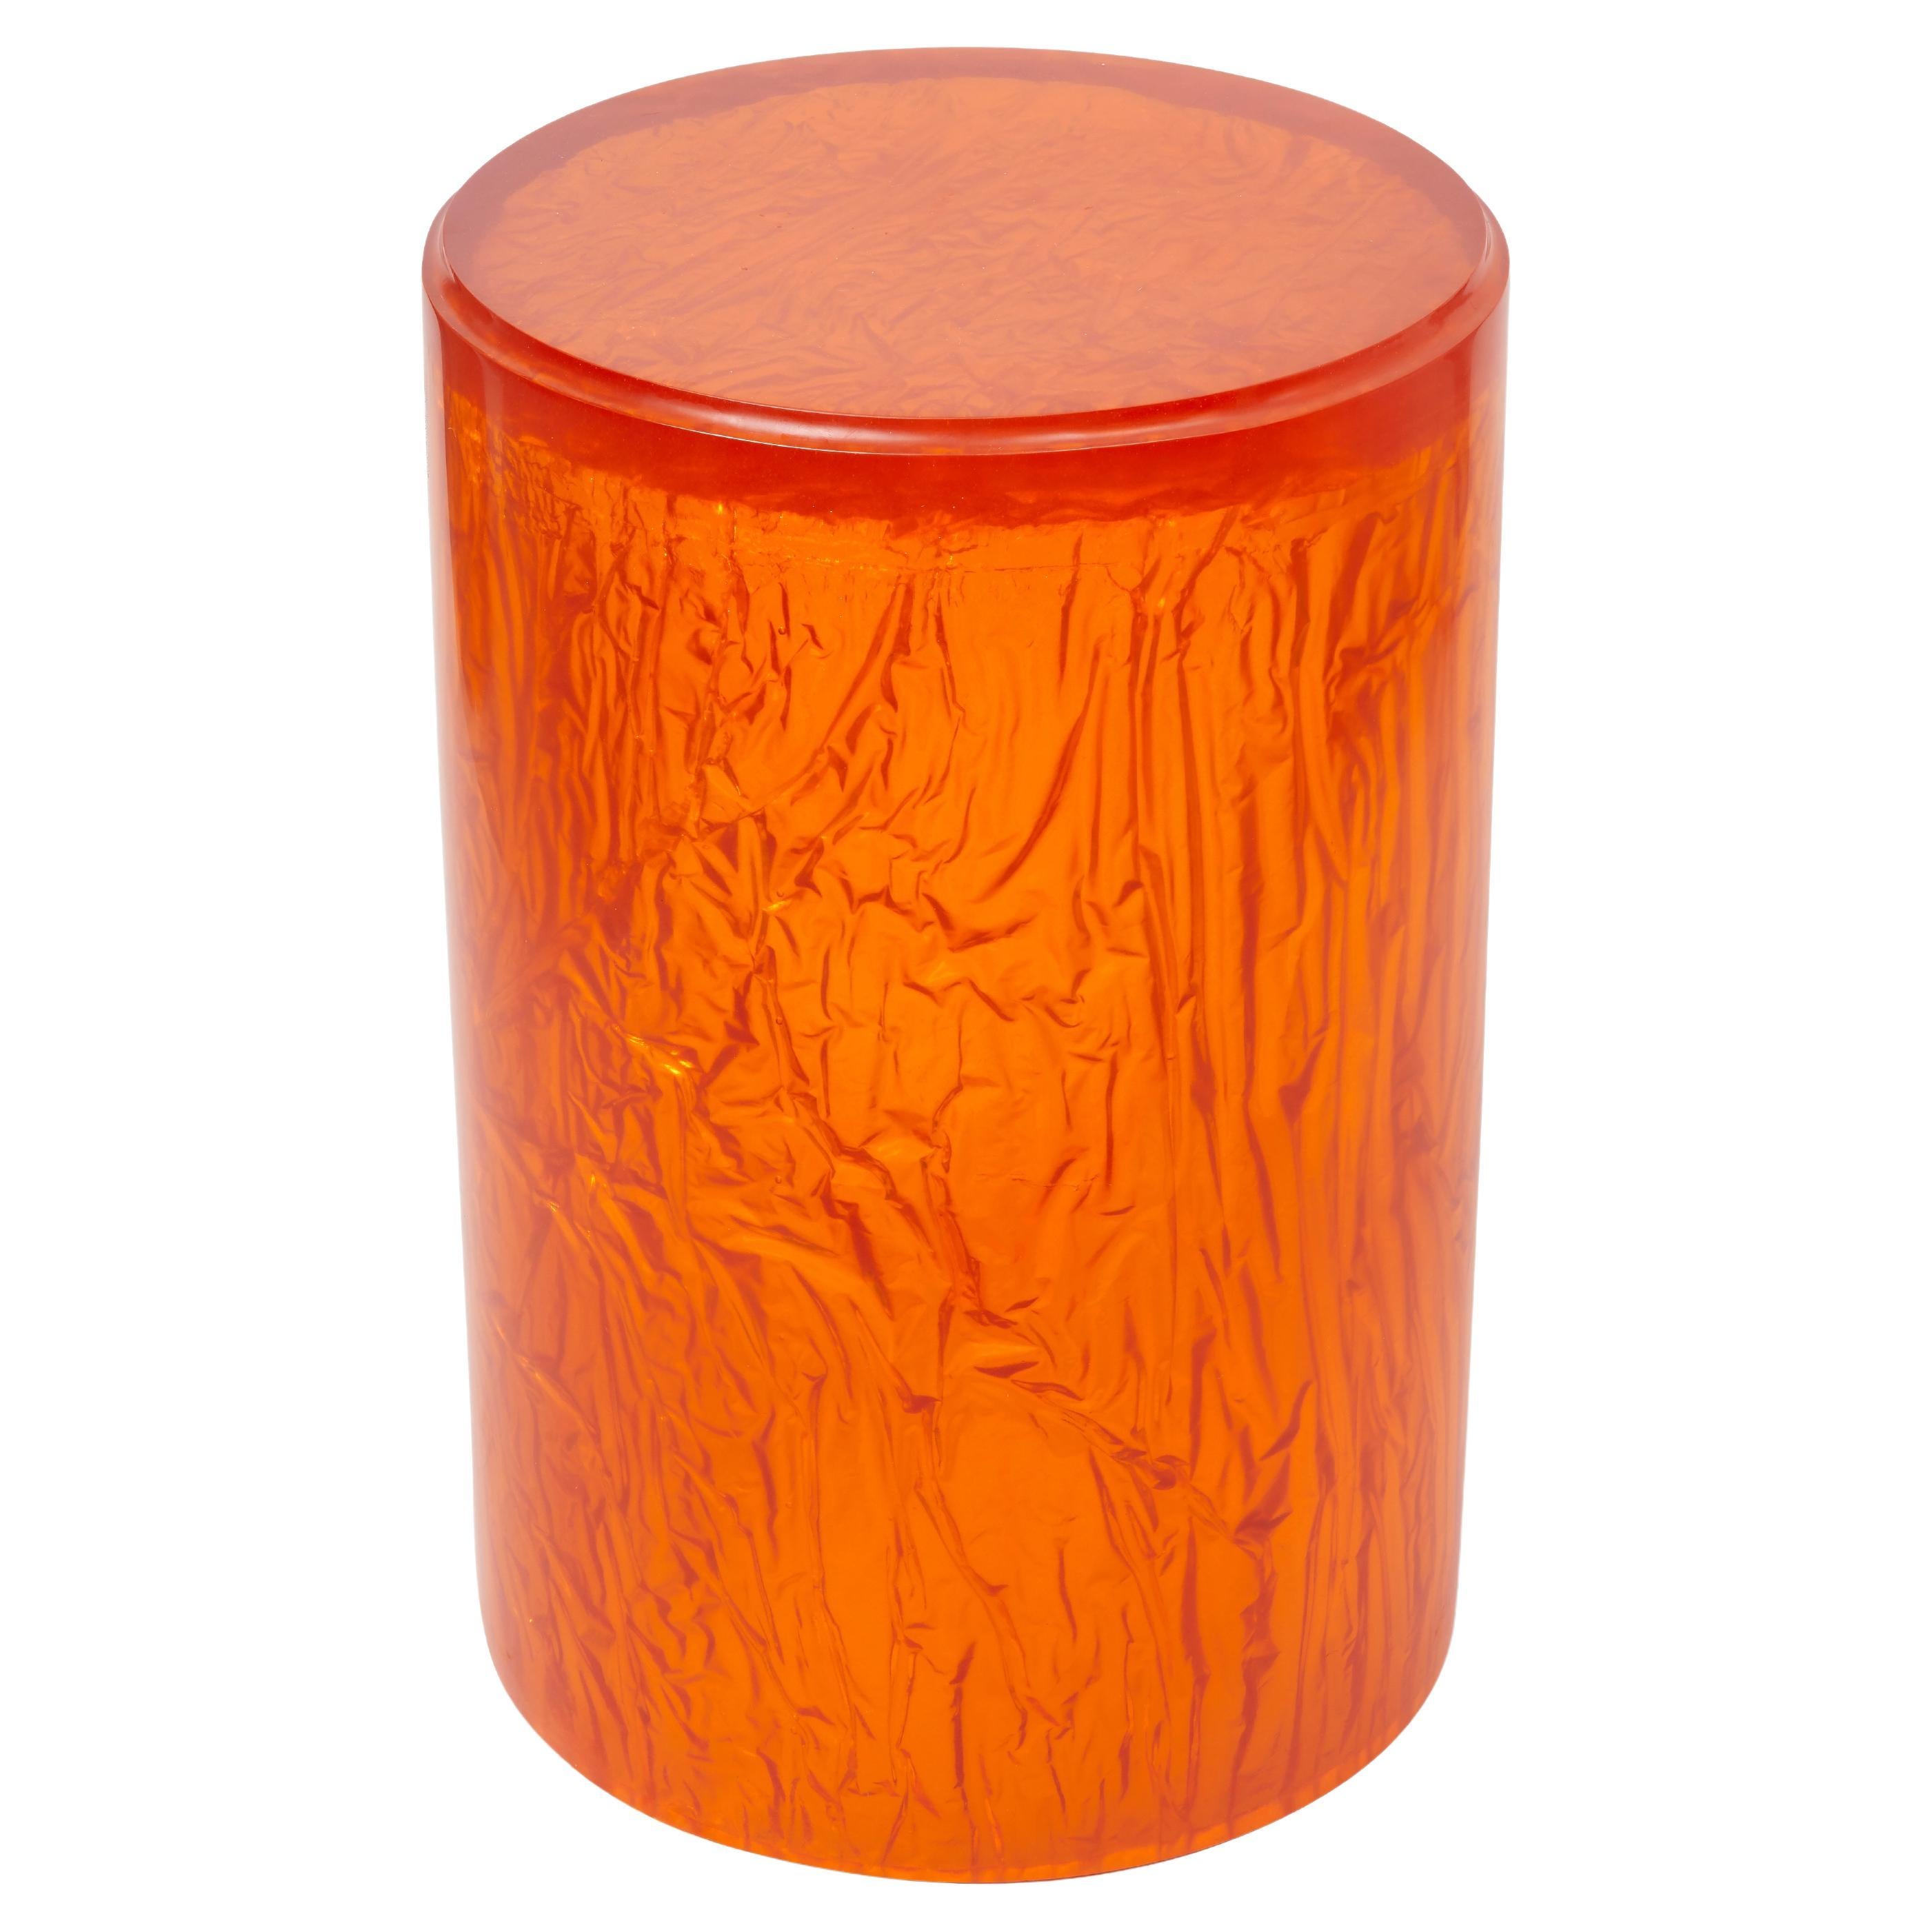 Table d'appoint ou tabouret contemporain en résine acrylique par Natalie Tredgett, orange brillant